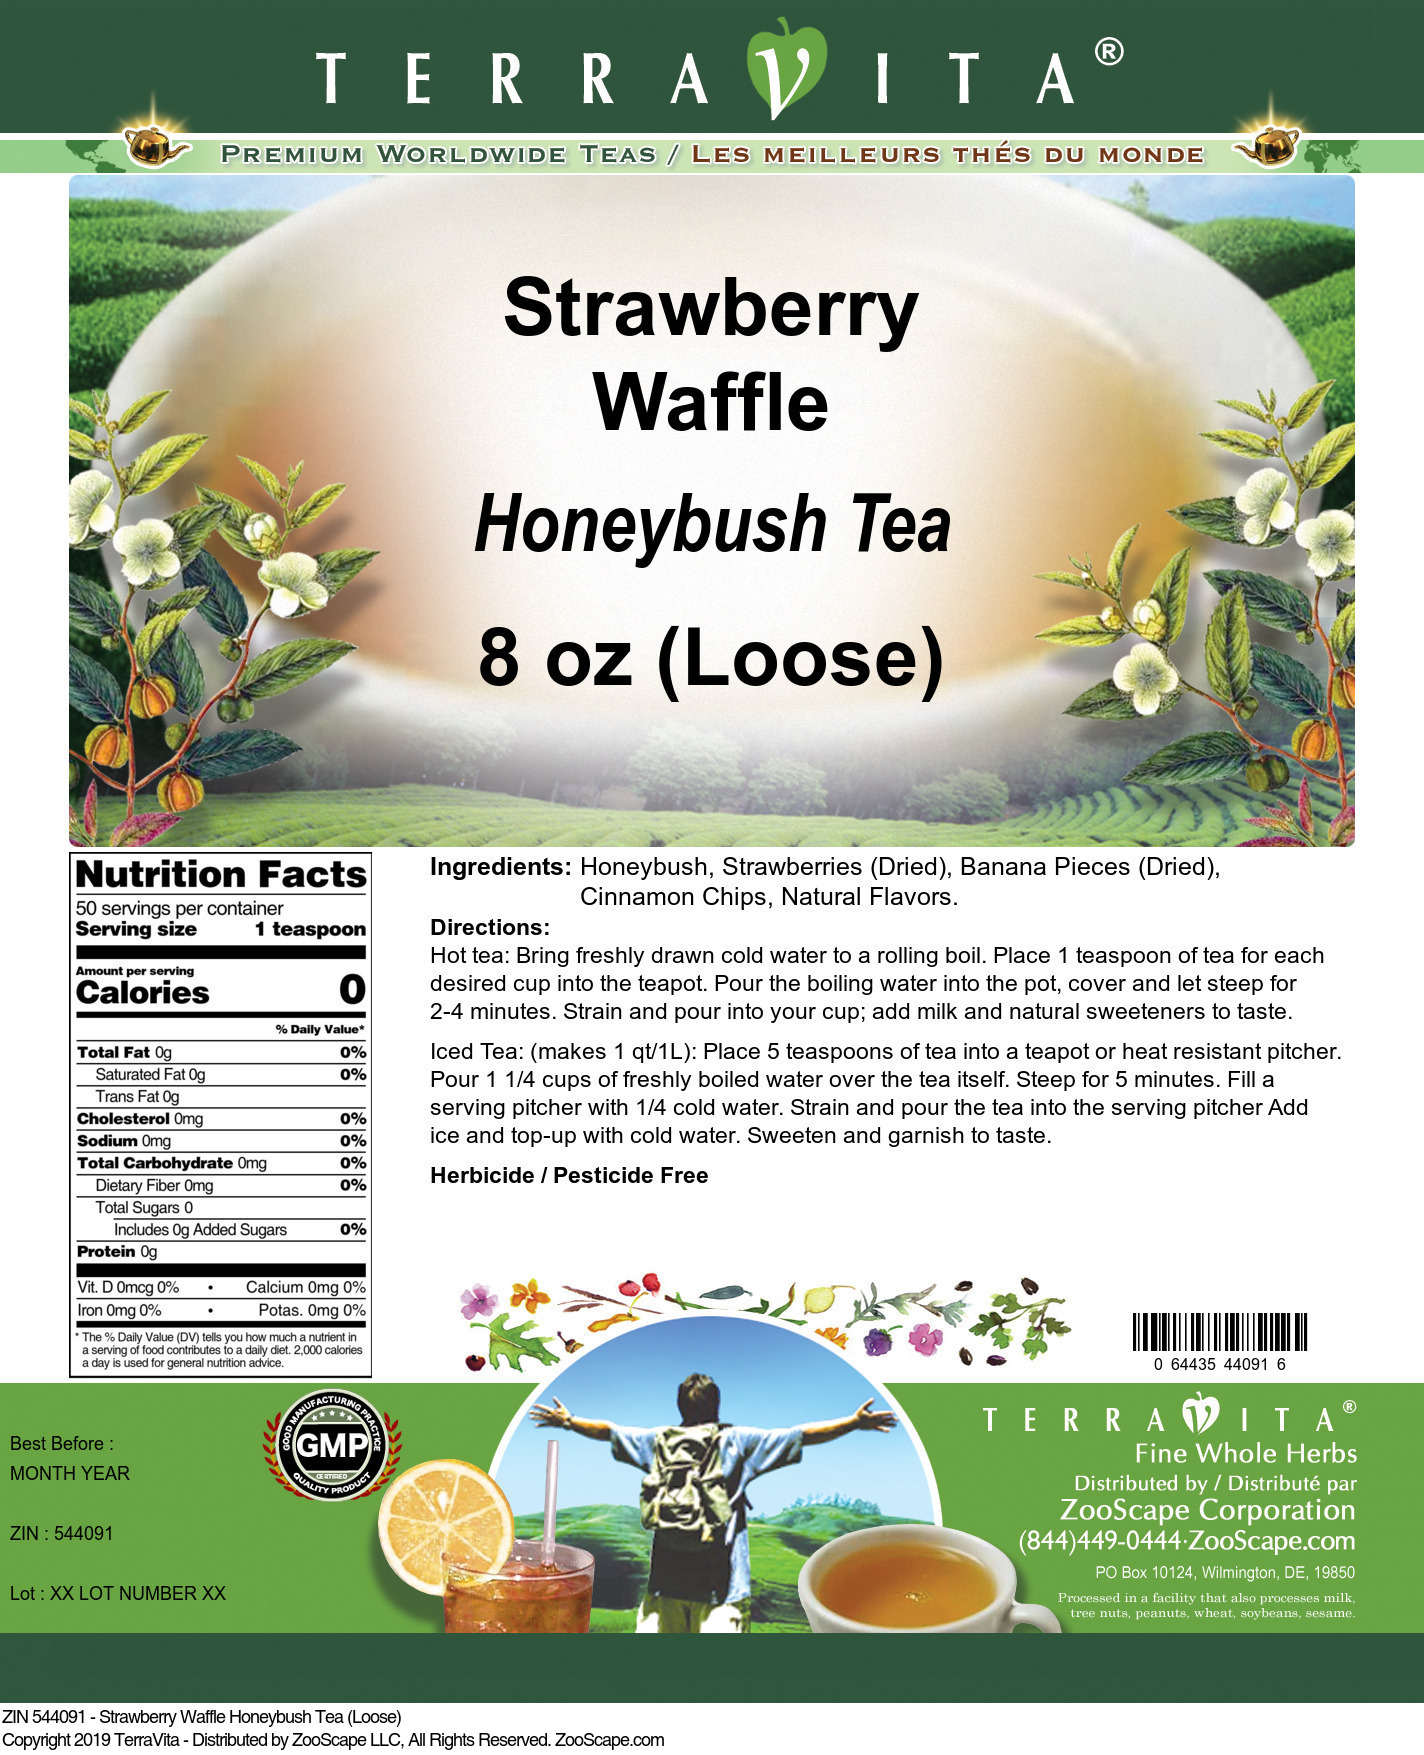 Strawberry Waffle Honeybush Tea (Loose) - Label